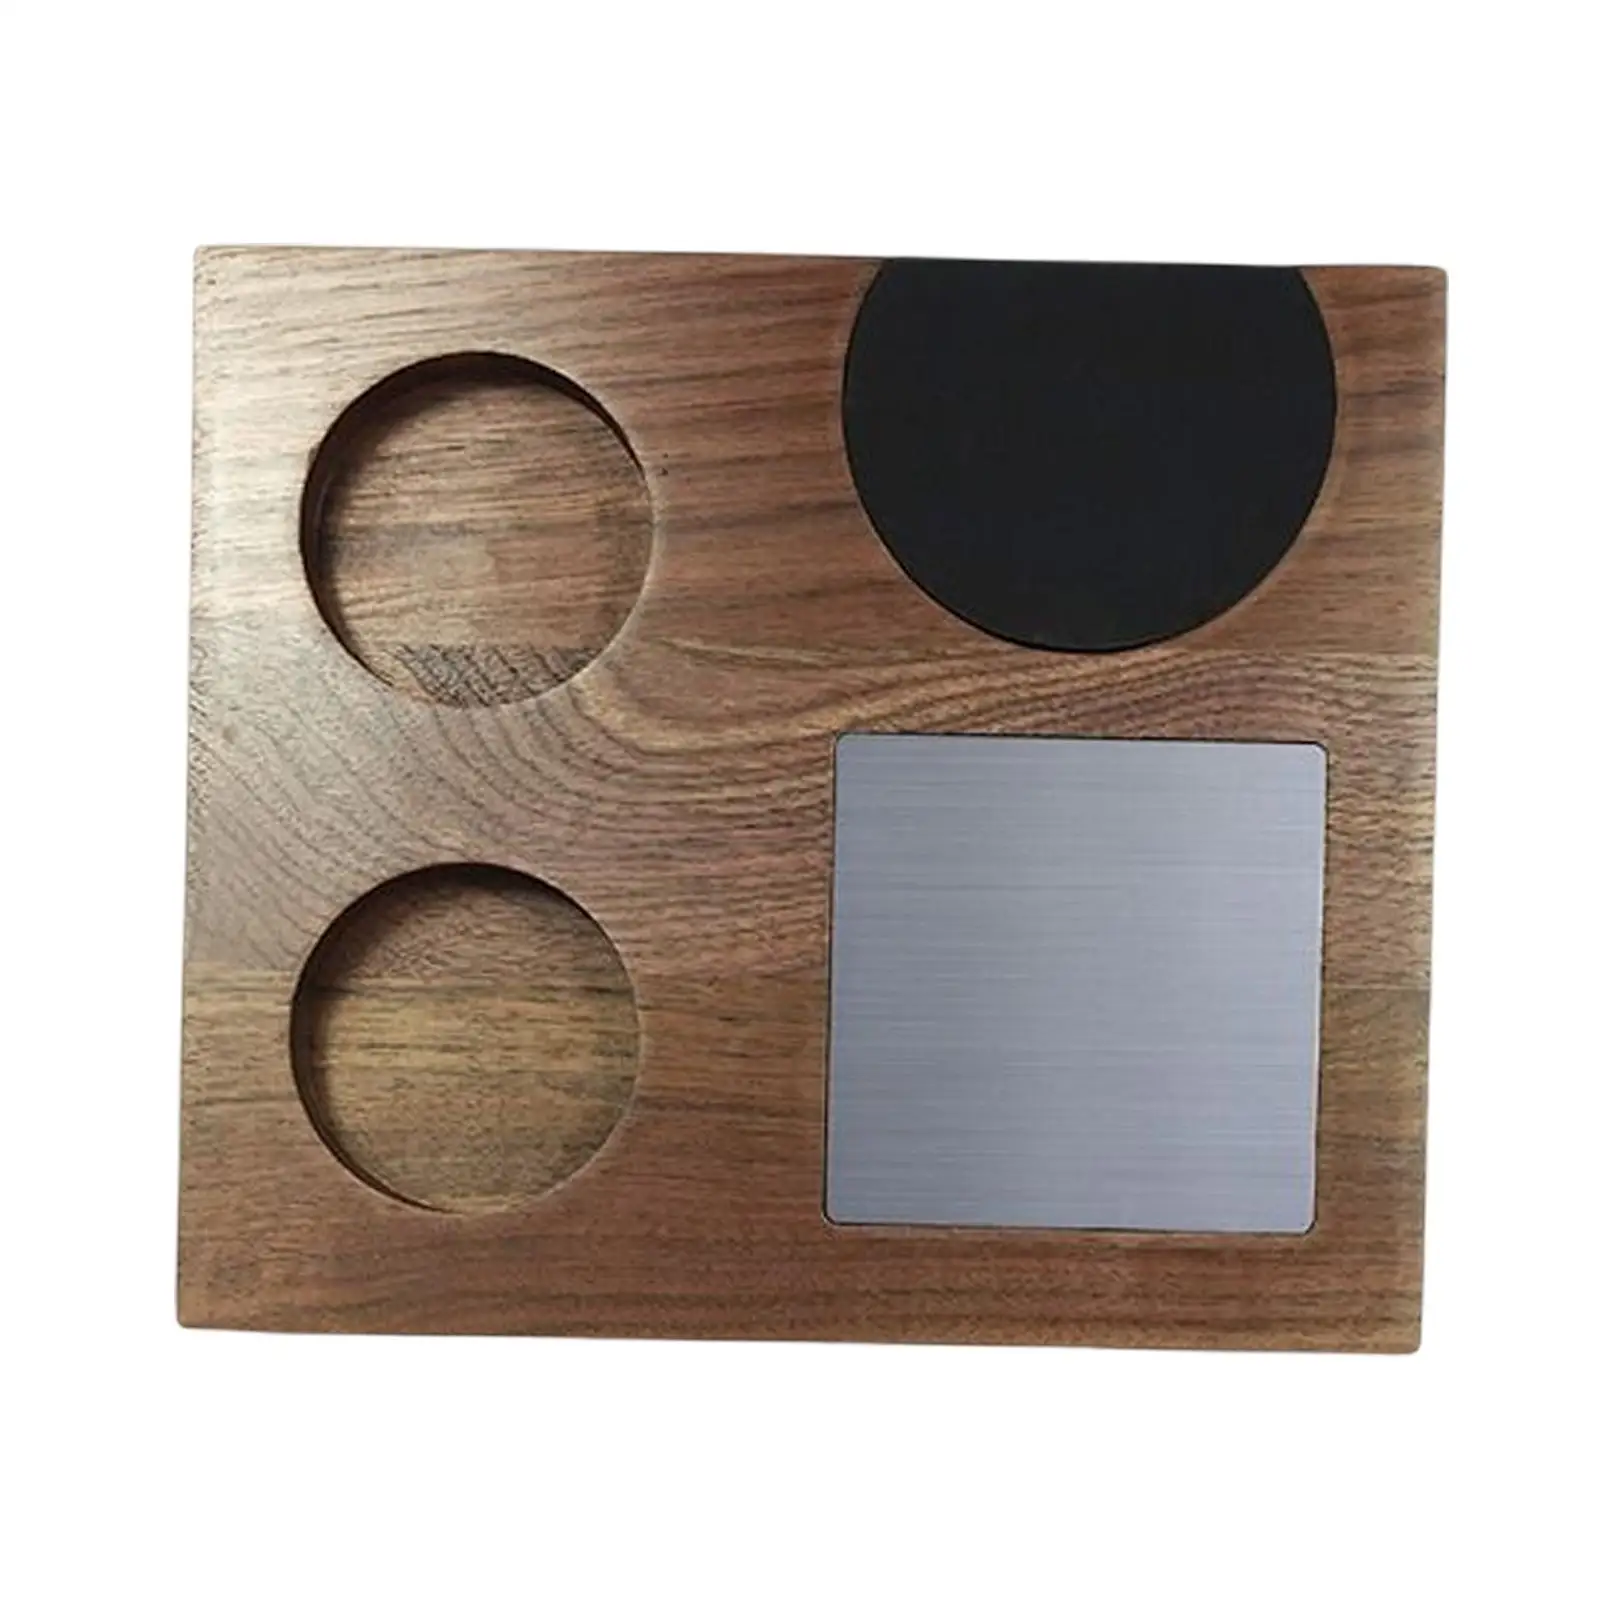 Wood Coffee Filter Tamper Holder Mat Tamper Station Anti Slip Foot Pad Portafilter Basket Holder Card Slot Design Durable